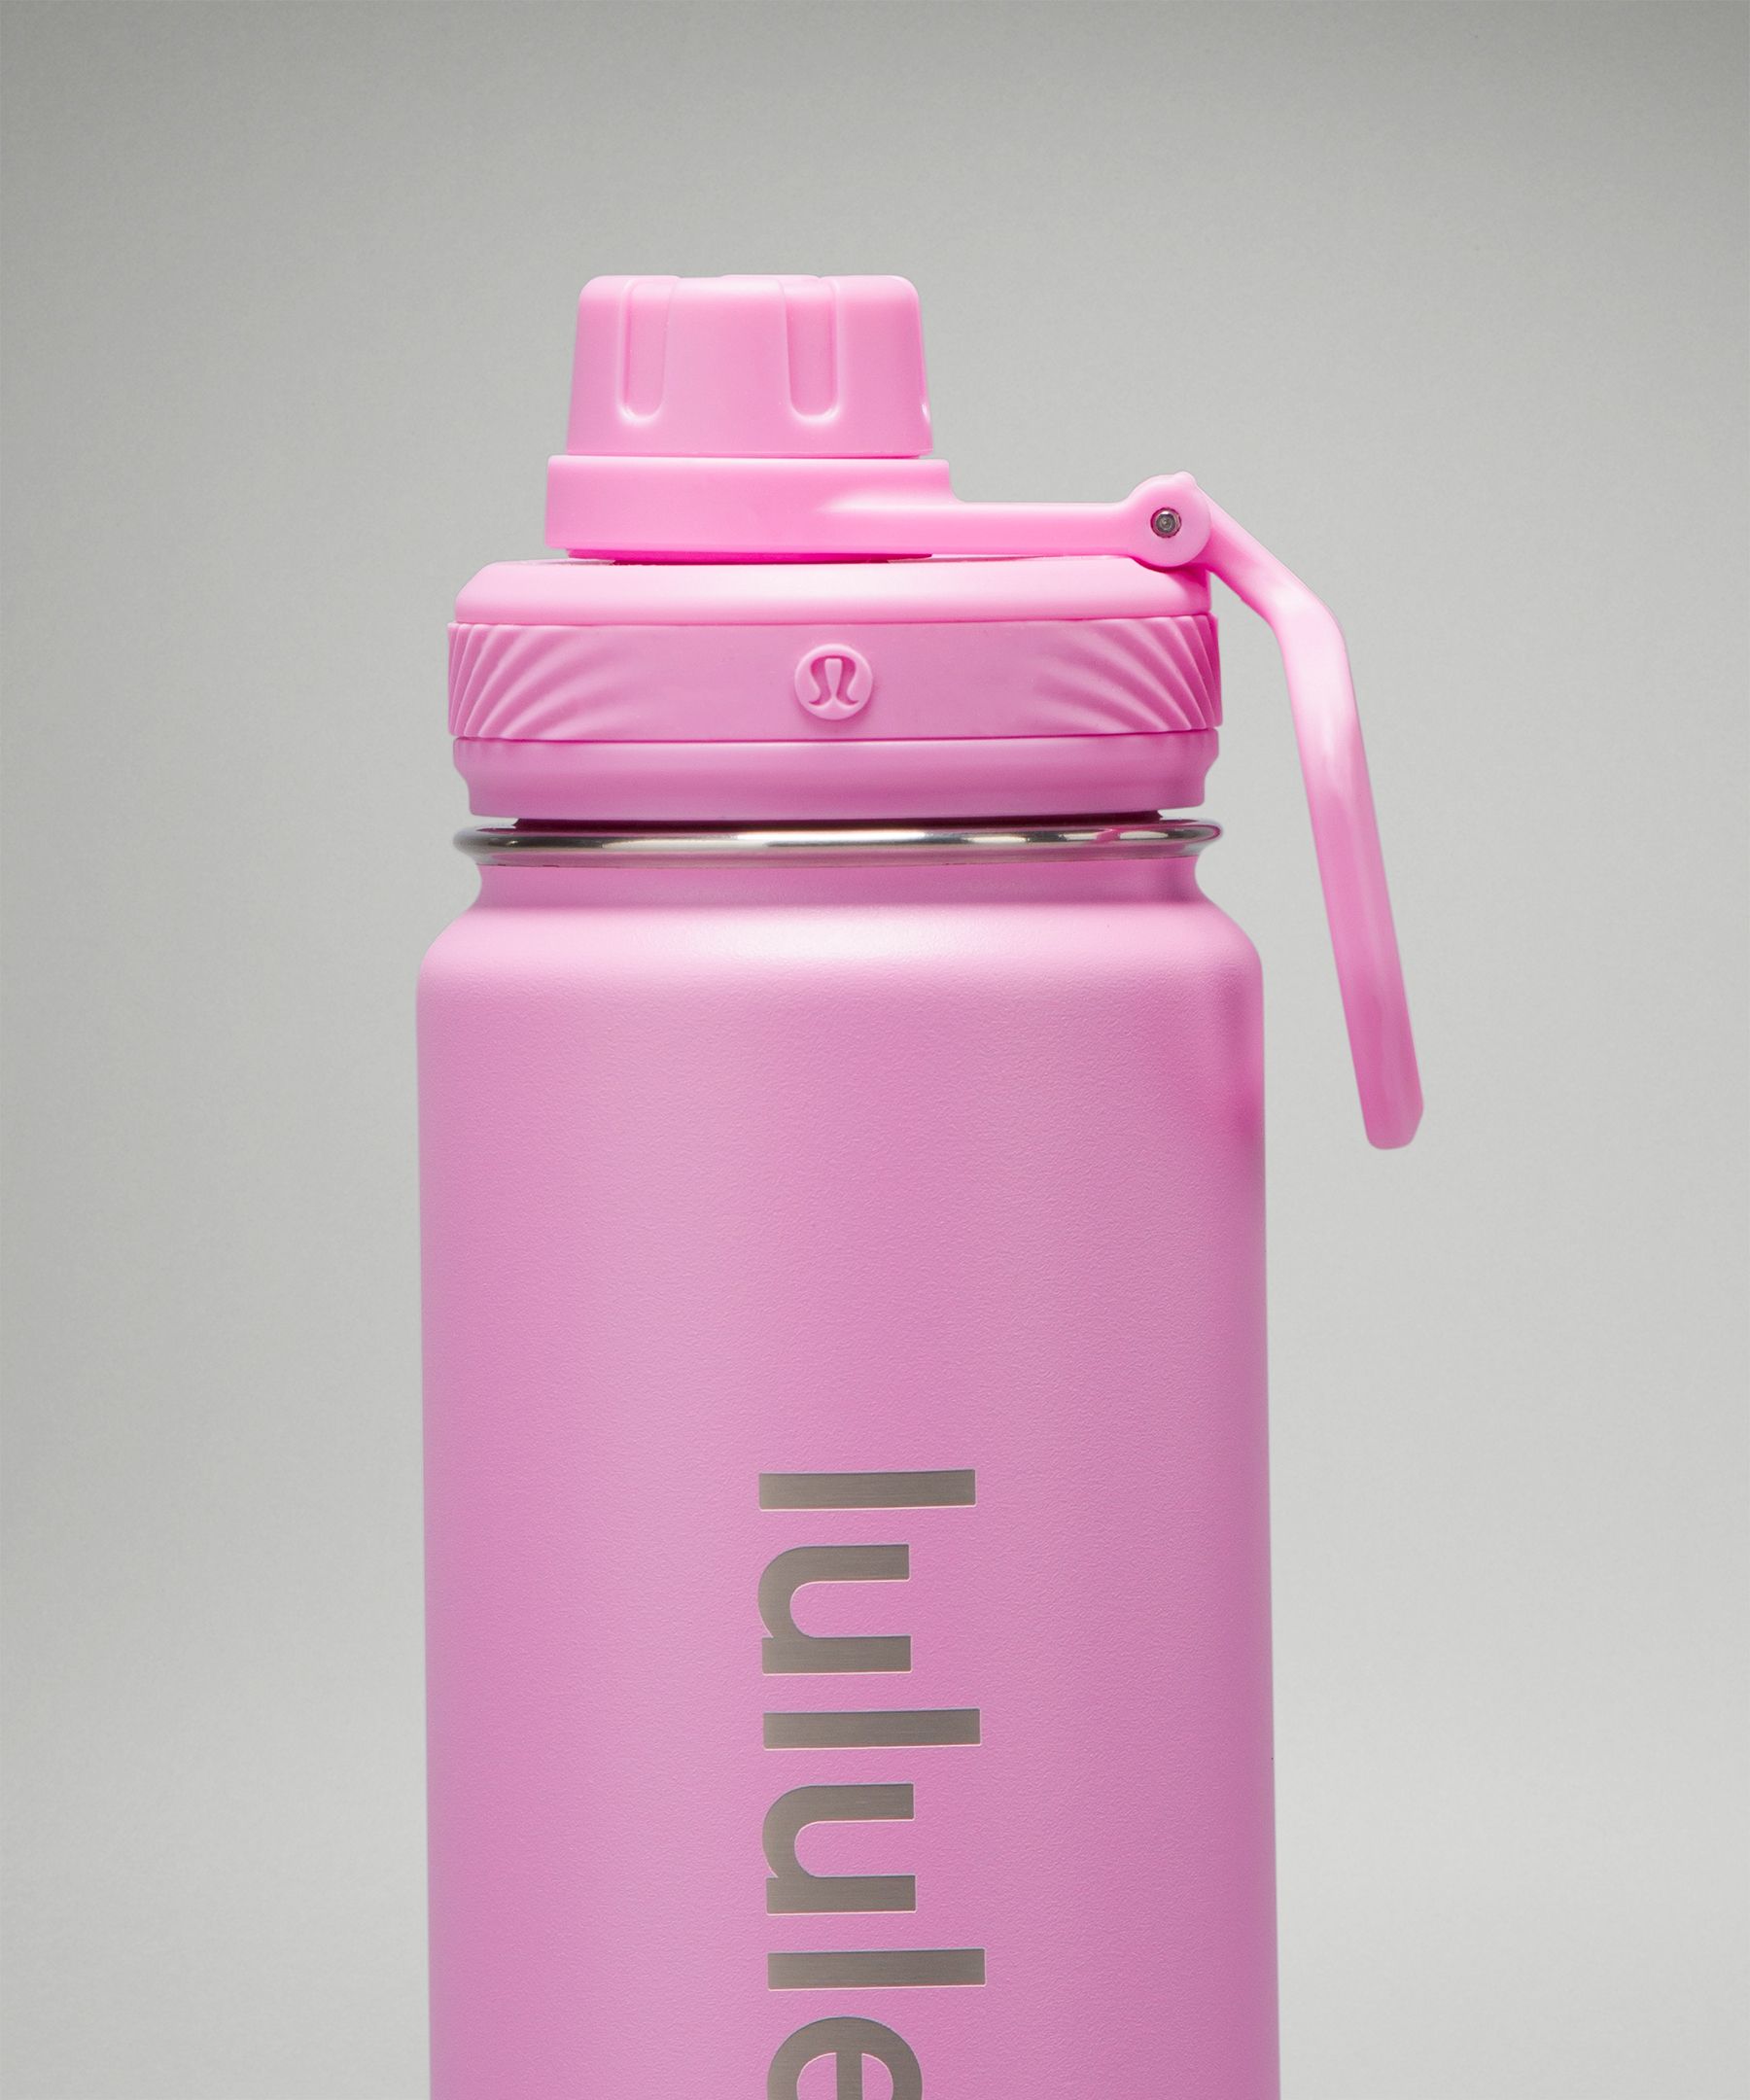 Lululemon Training Back to Life Sport Bottle 24oz - Pink